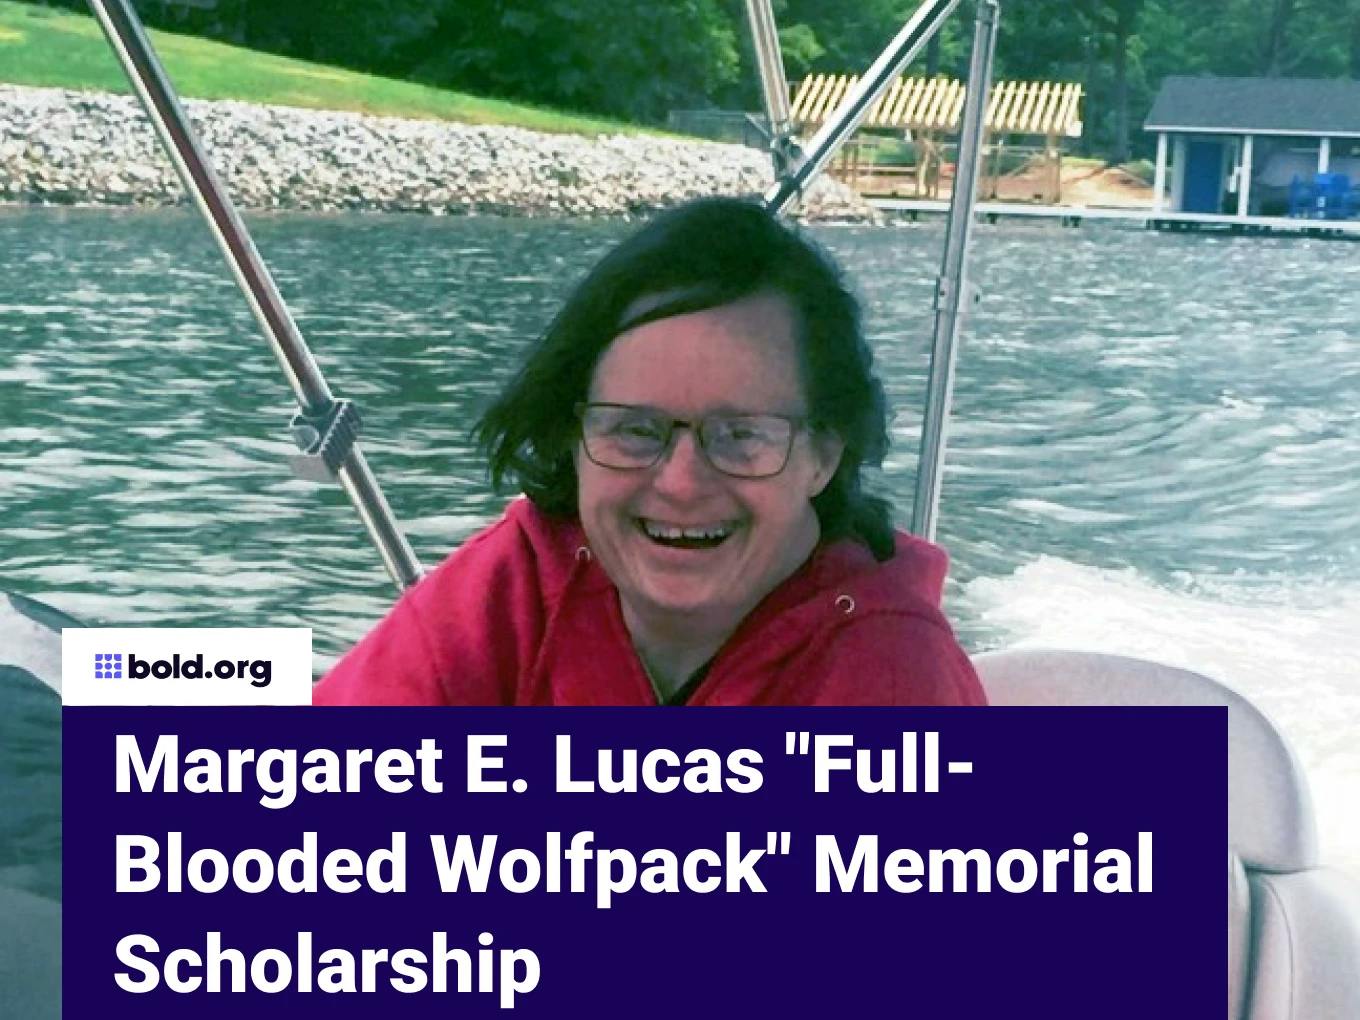 Margaret E. Lucas "Full-Blooded Wolfpack" Memorial Scholarship